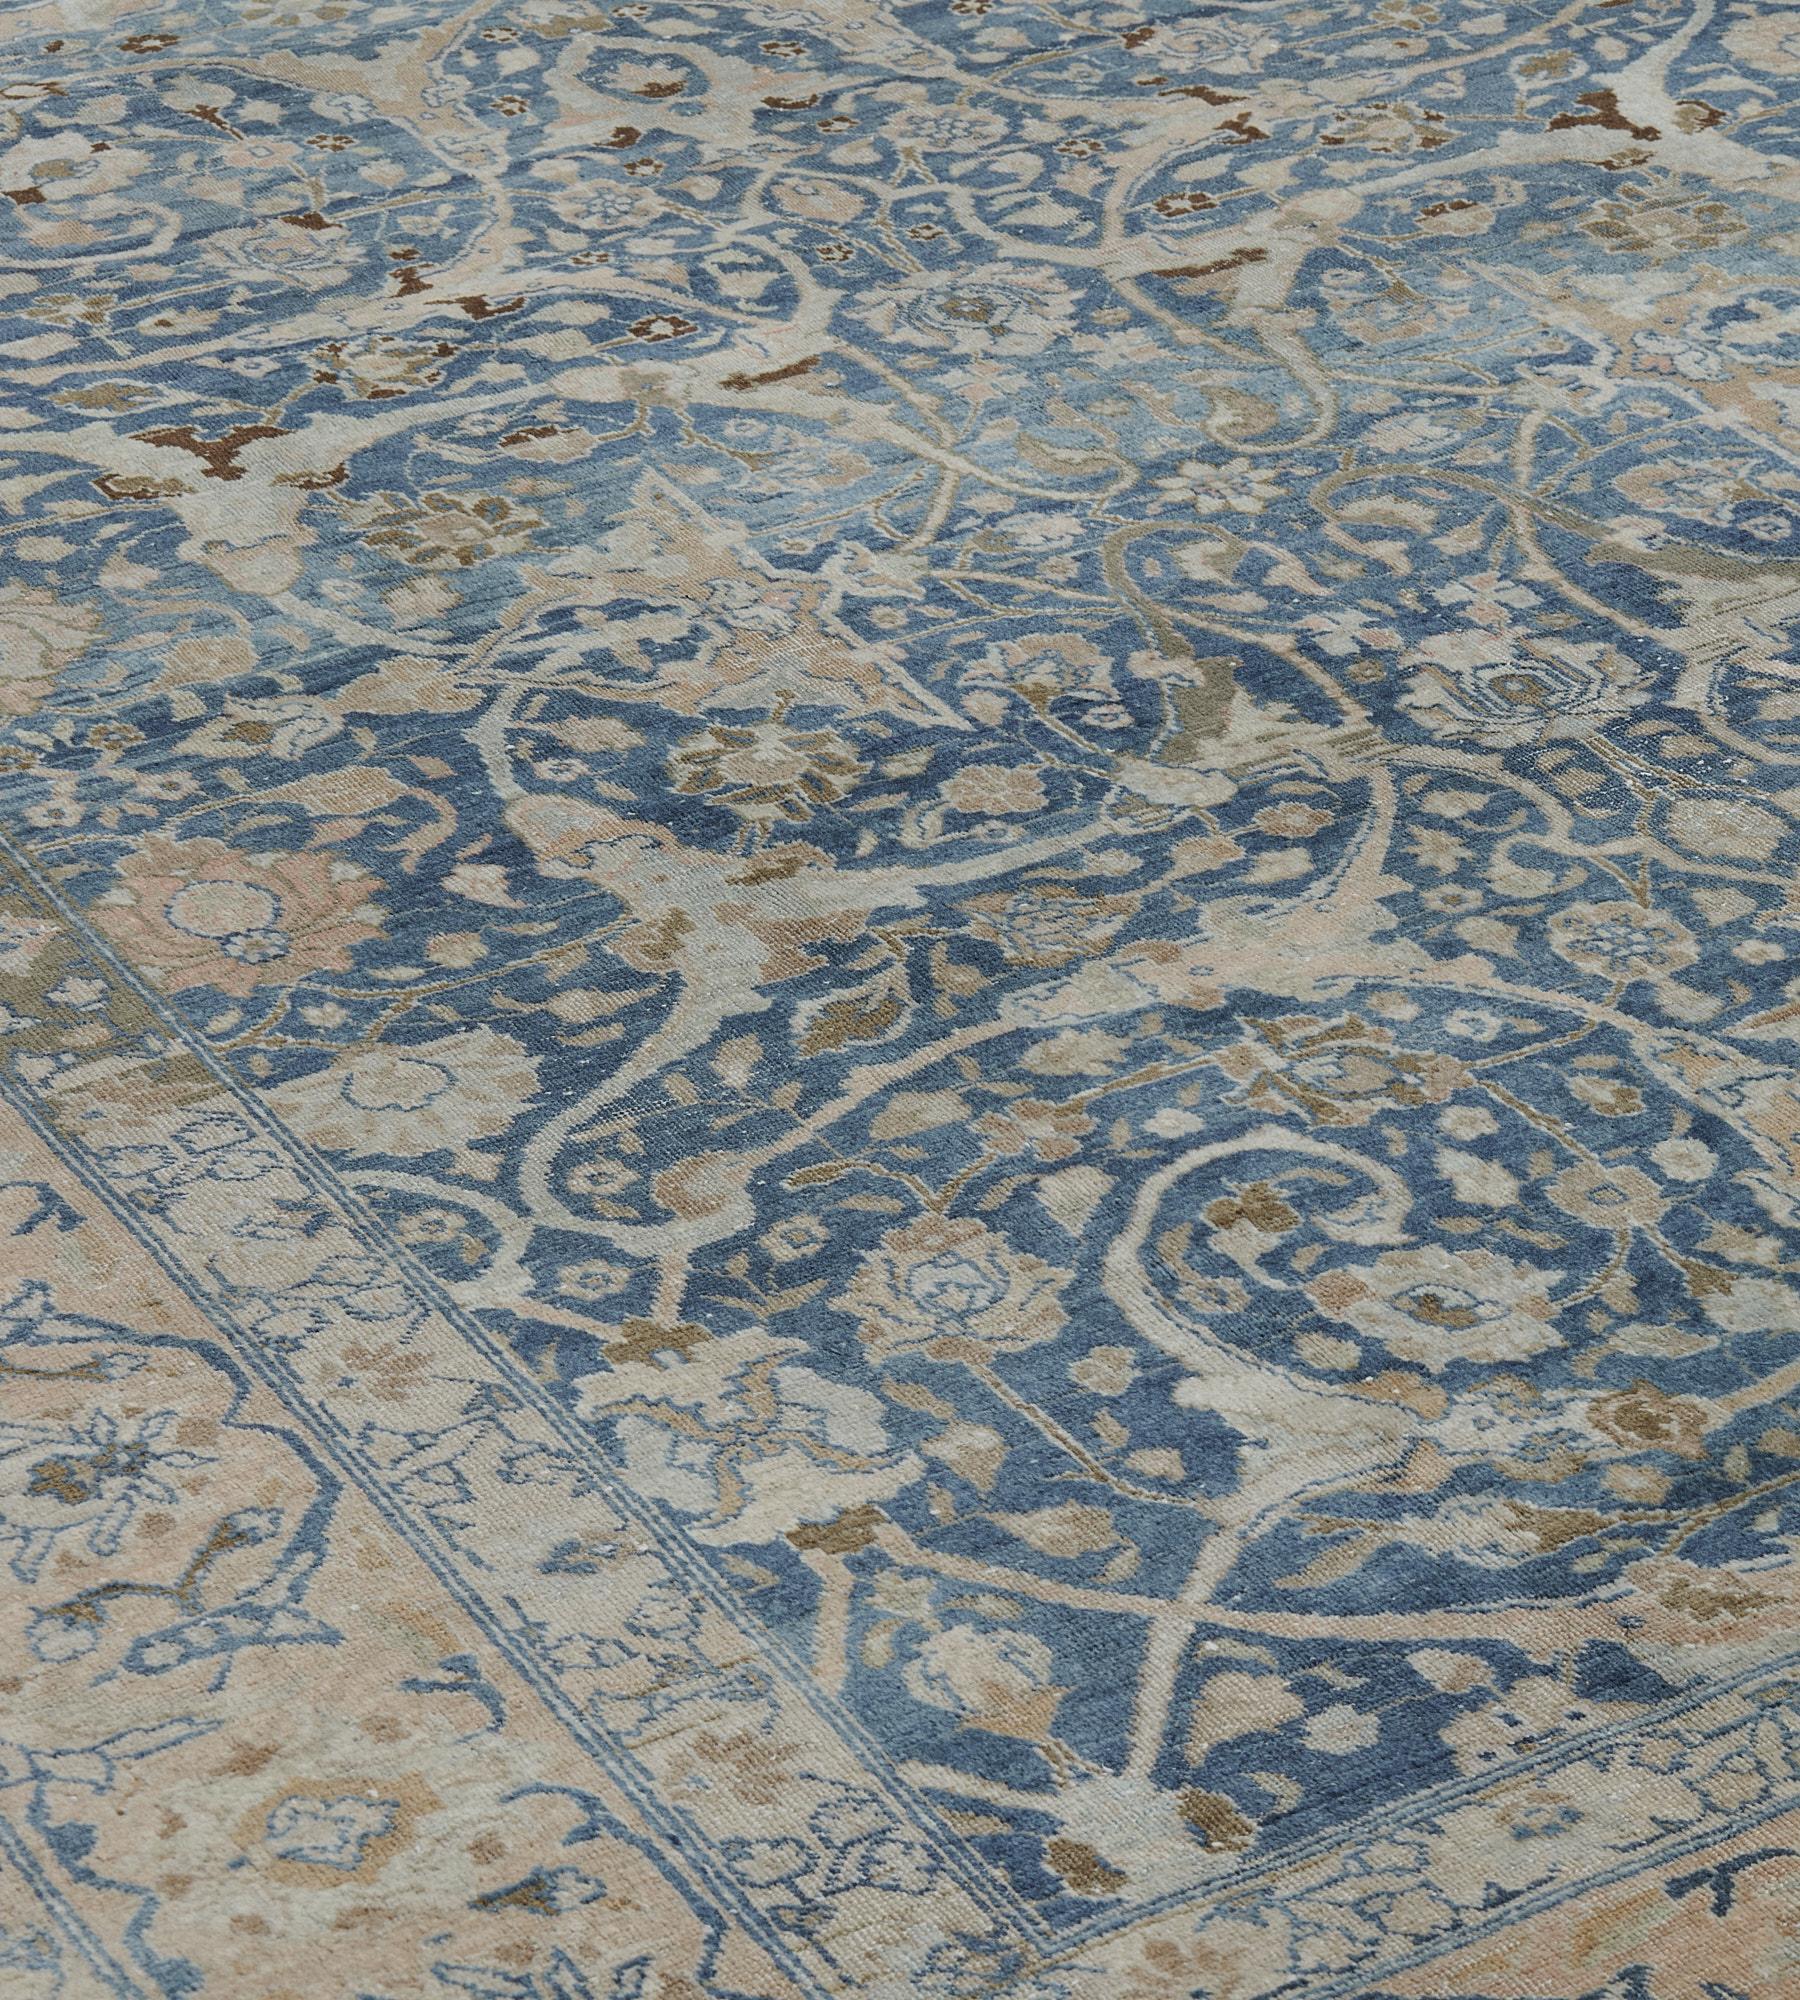 Ce tapis ancien de Tabriz, datant d'environ 1910, présente un champ bleu nuancé avec un motif d'ensemble de vigne à feuilles d'acanthe fendues brun sable et bleu clair émettant une variété de têtes de fleurs et de vrilles feuillues, une colonne de